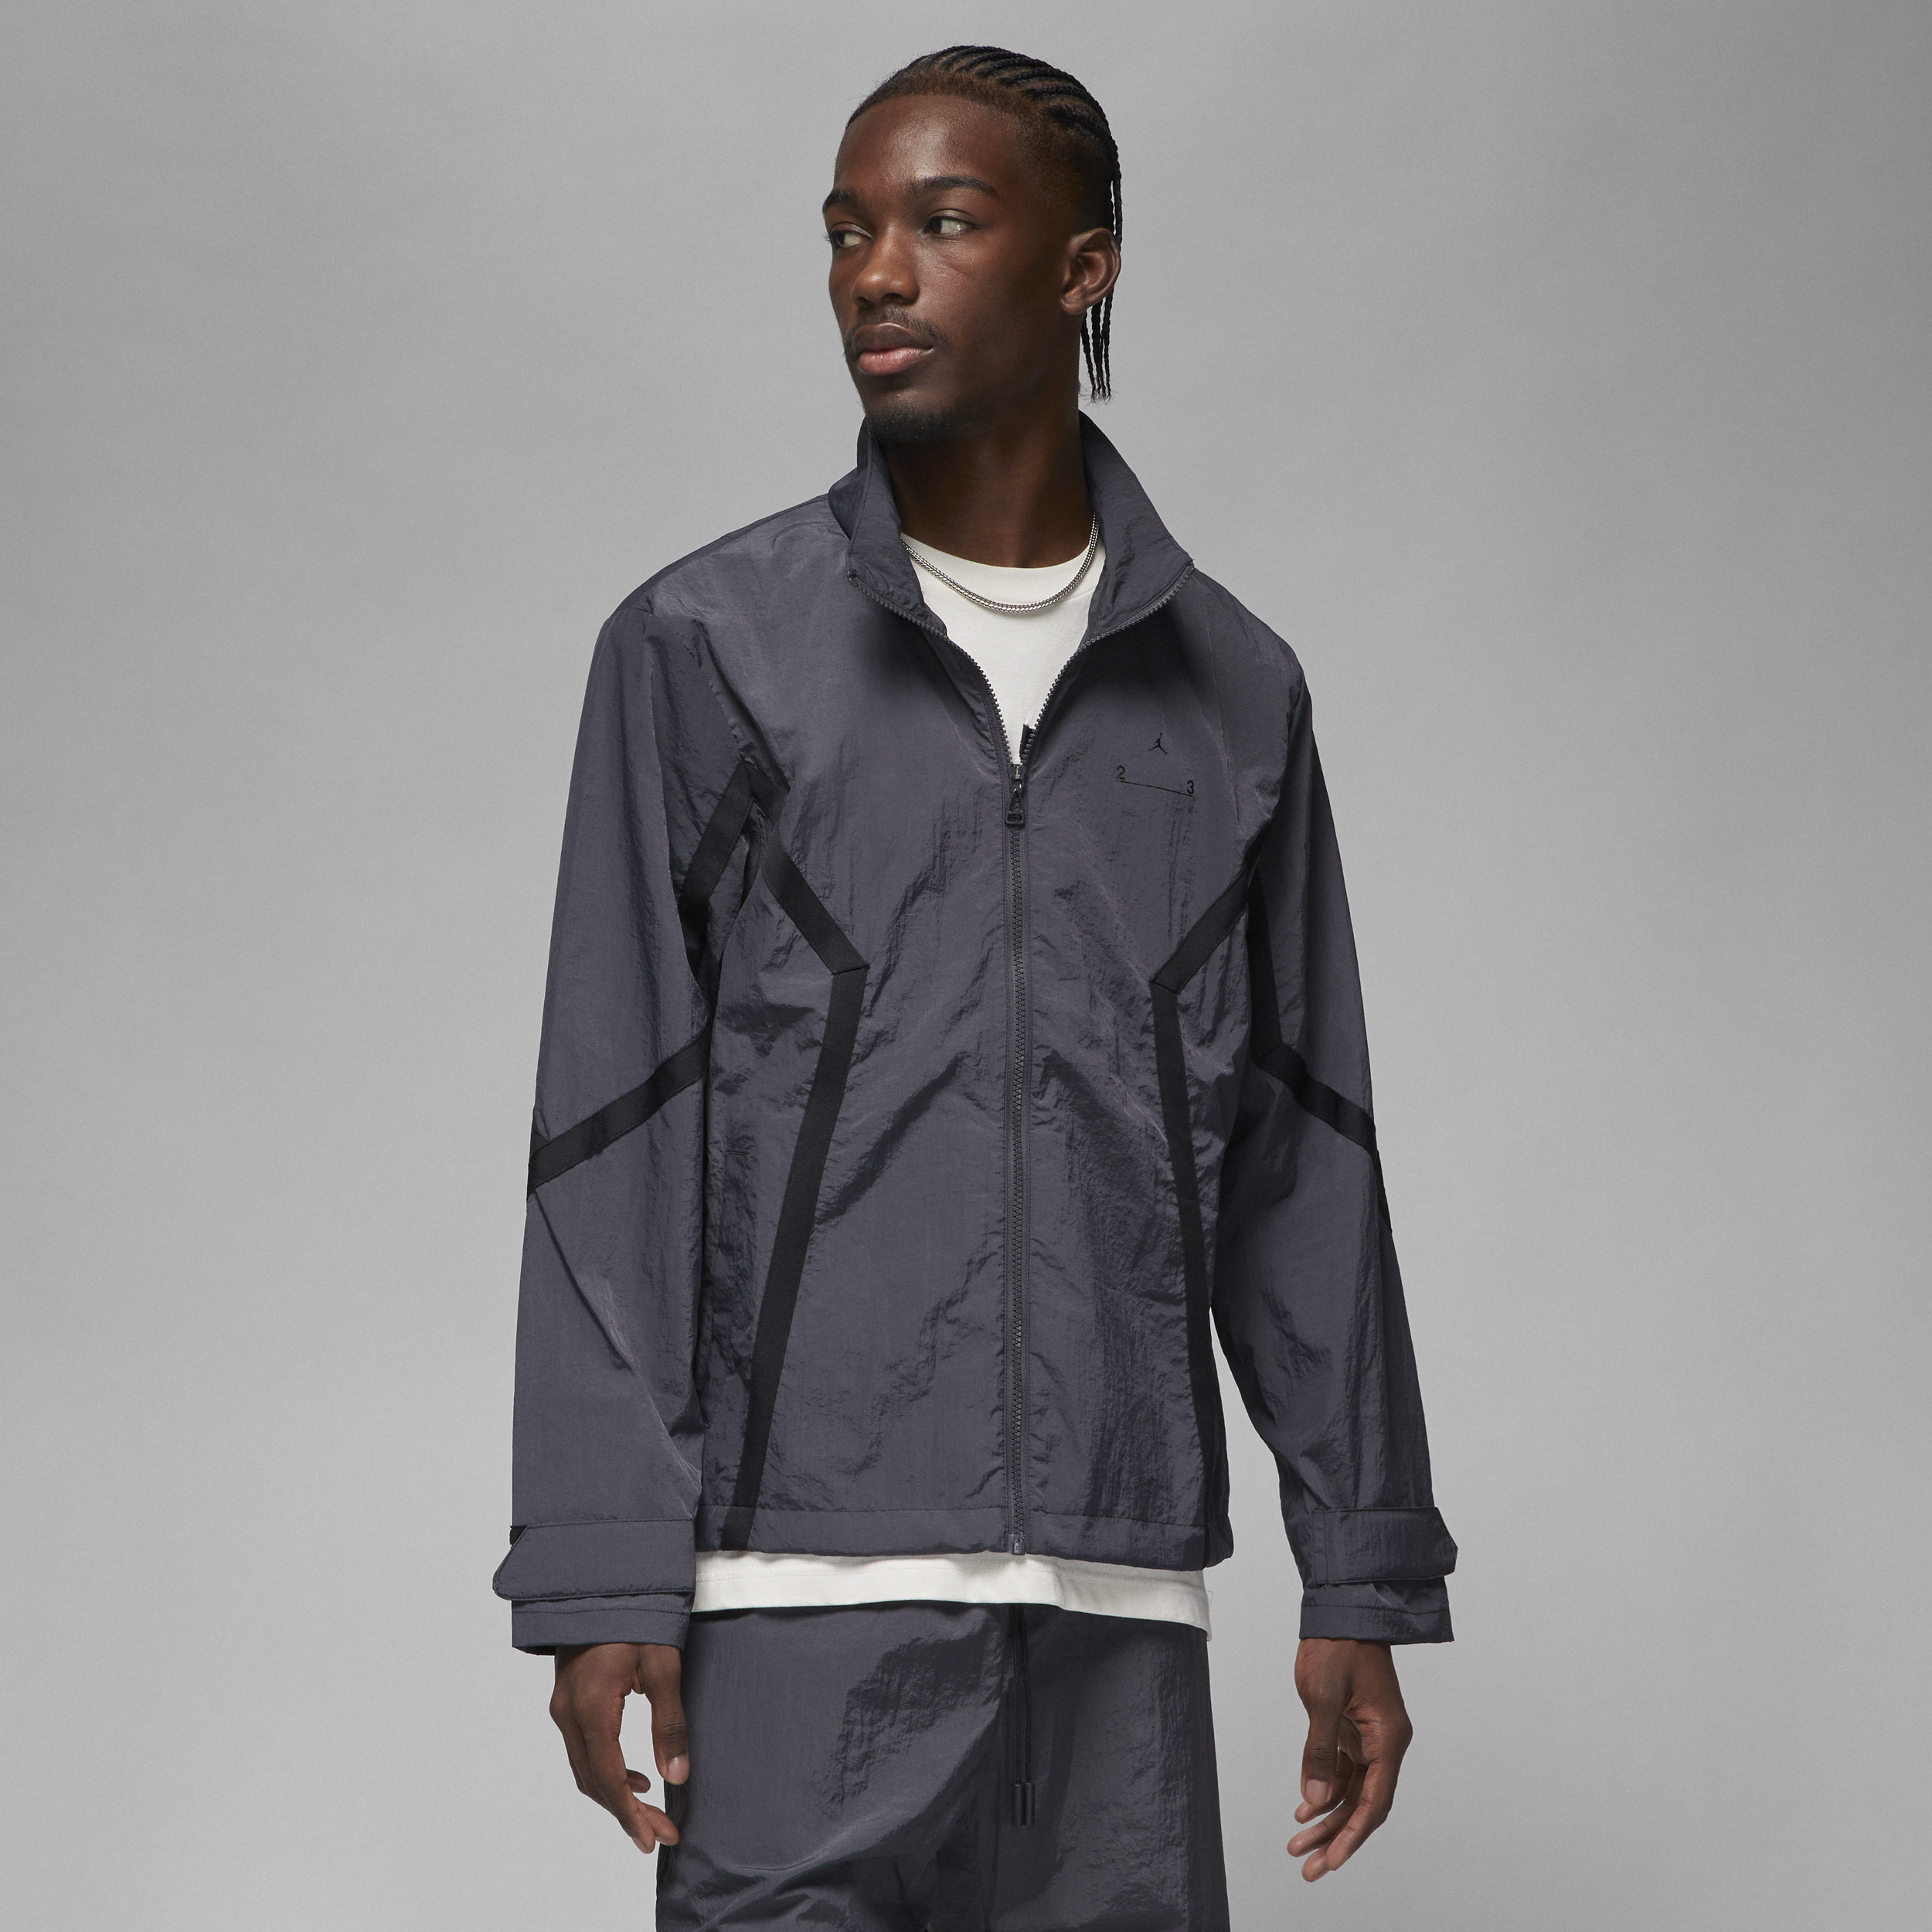 Jordan 23 Engineered-jakke til mænd - grå